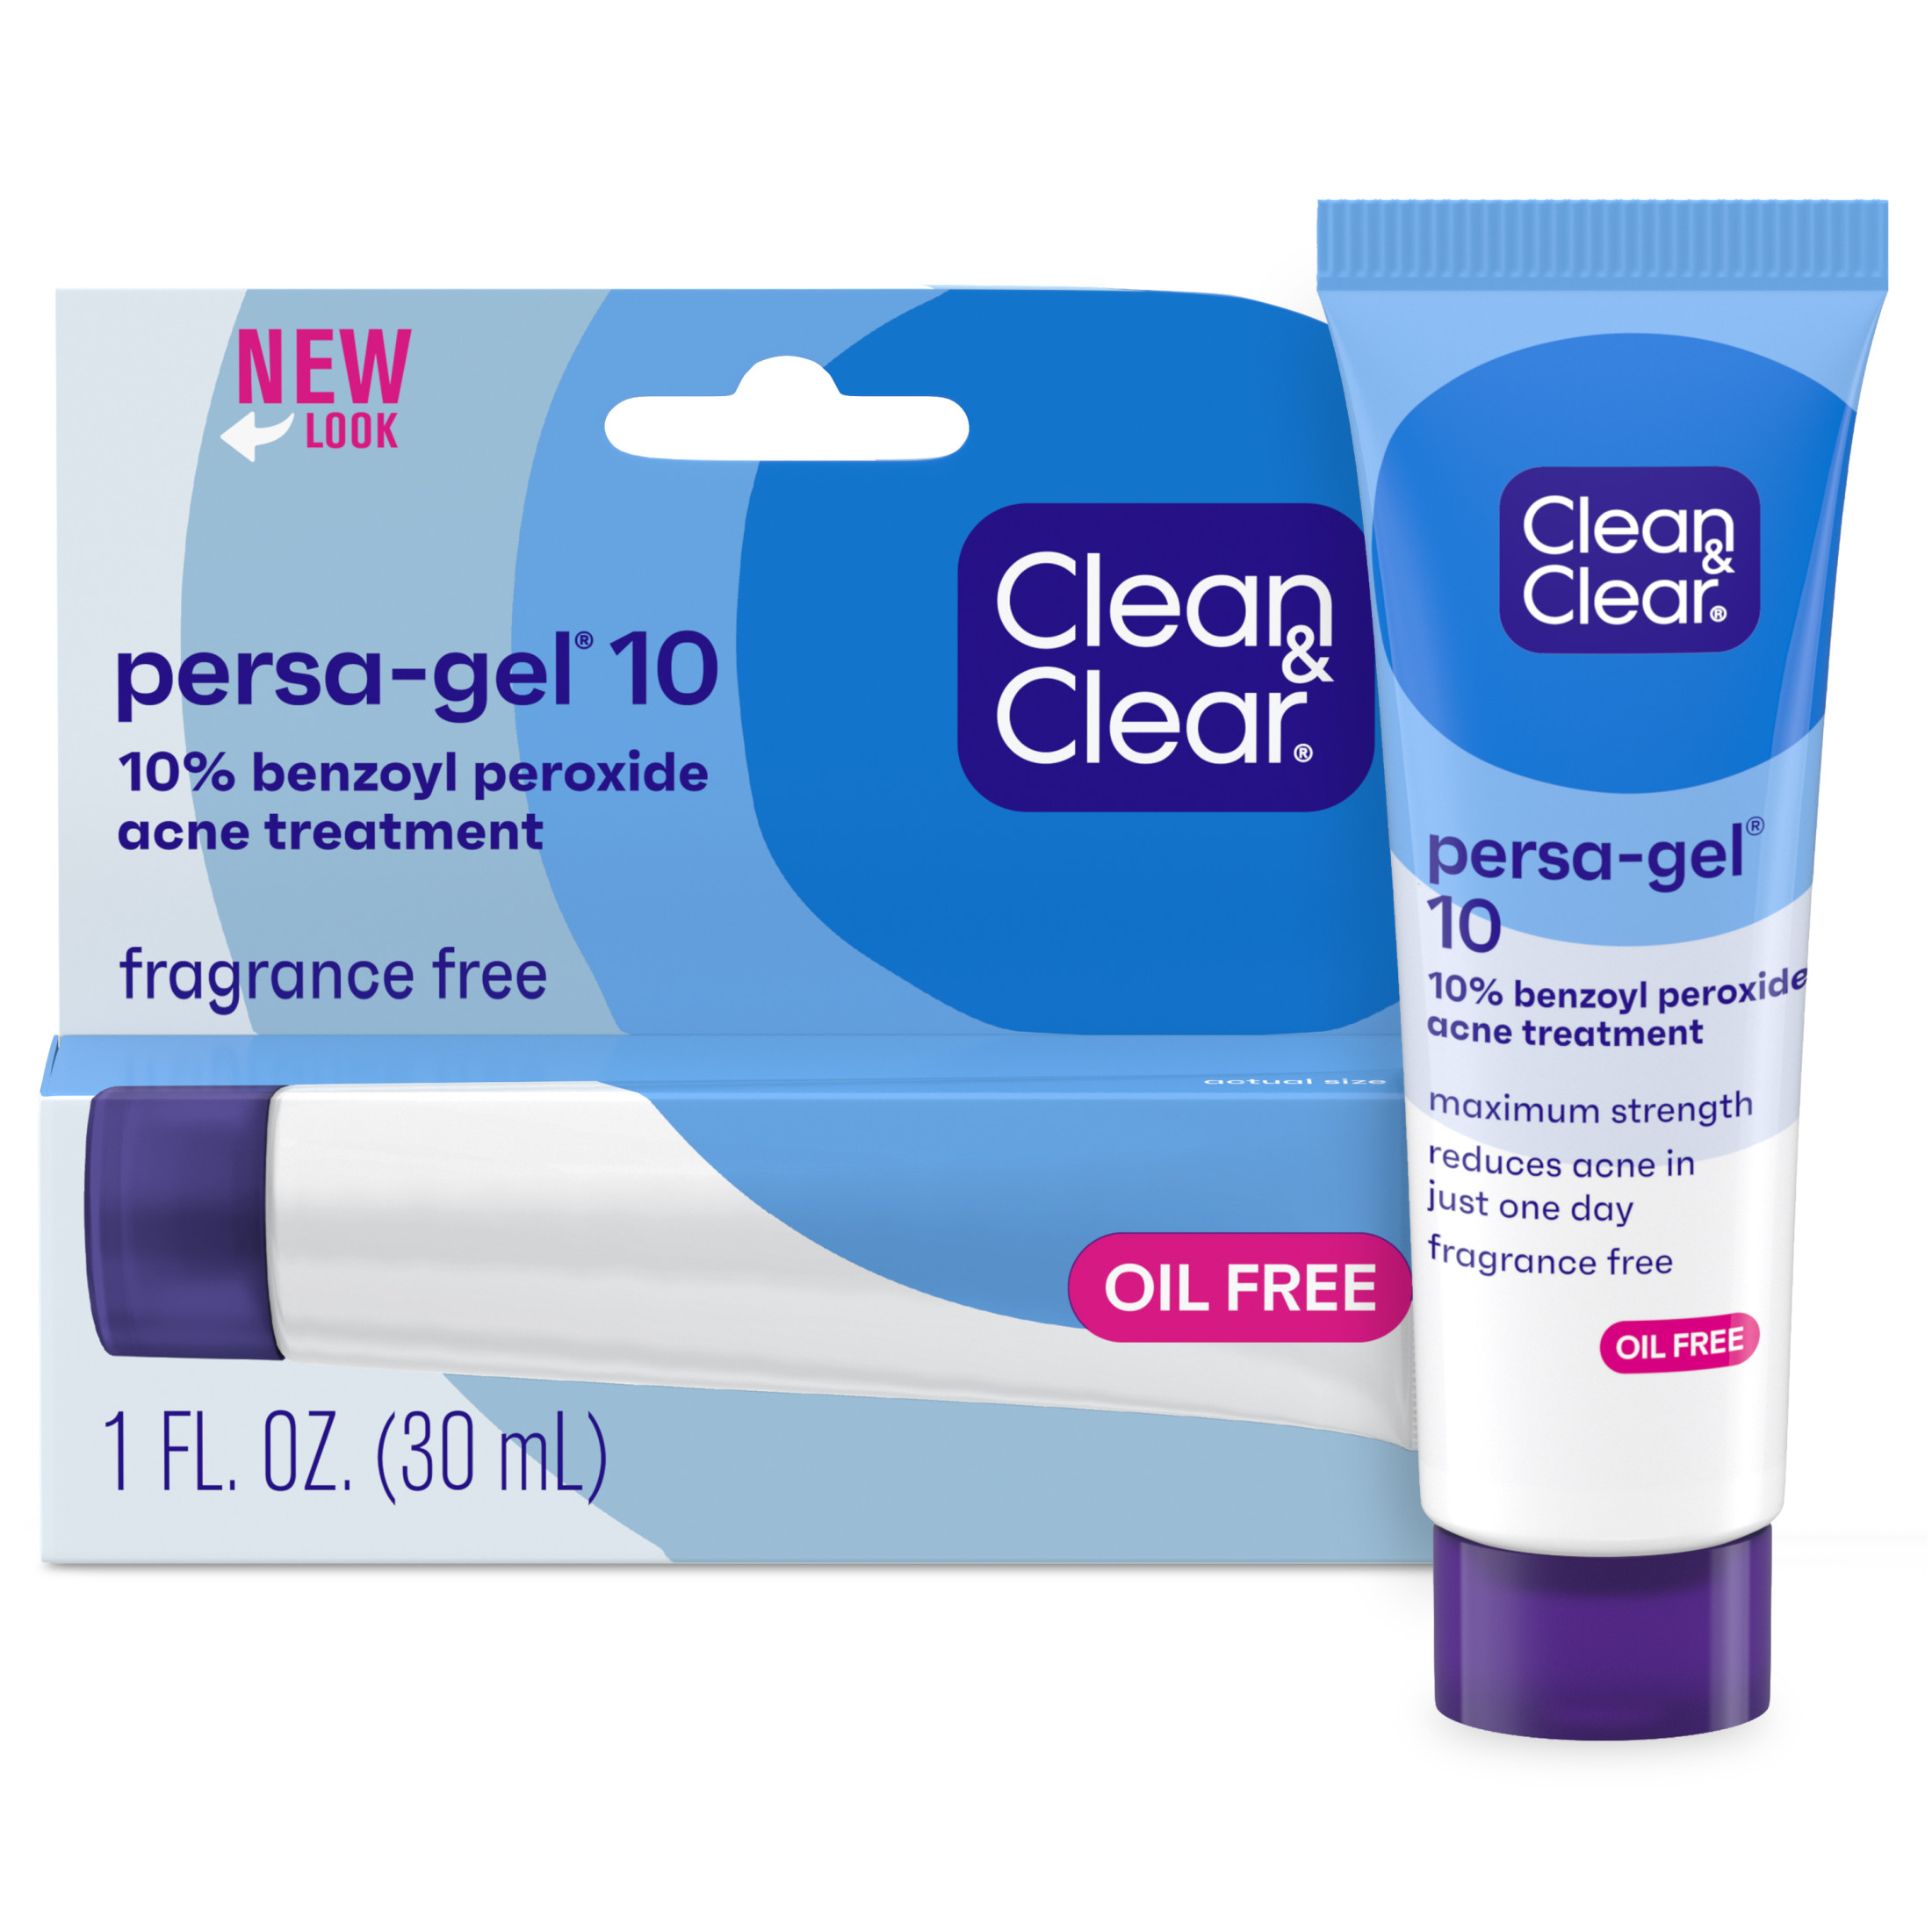 Clean & Clear Persa-Gel 10 Acne Gel, 10% Benzoyl Peroxide, 1 fl. oz - image 1 of 9